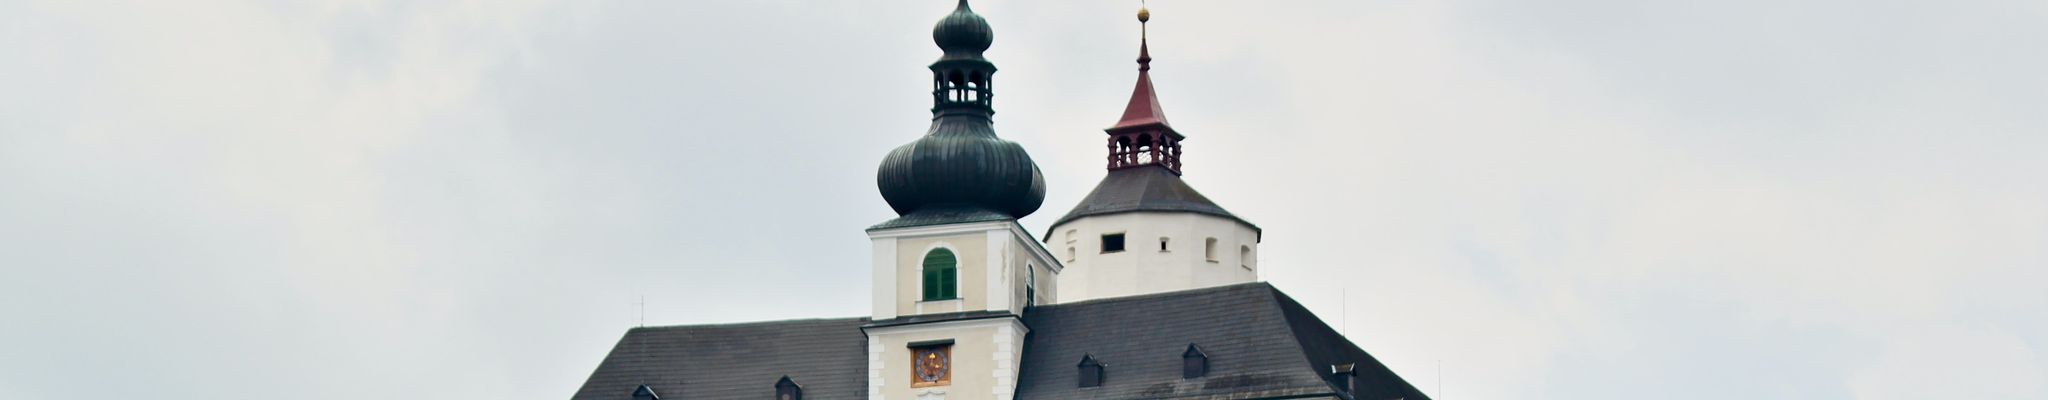 Замок Форхтенштайн